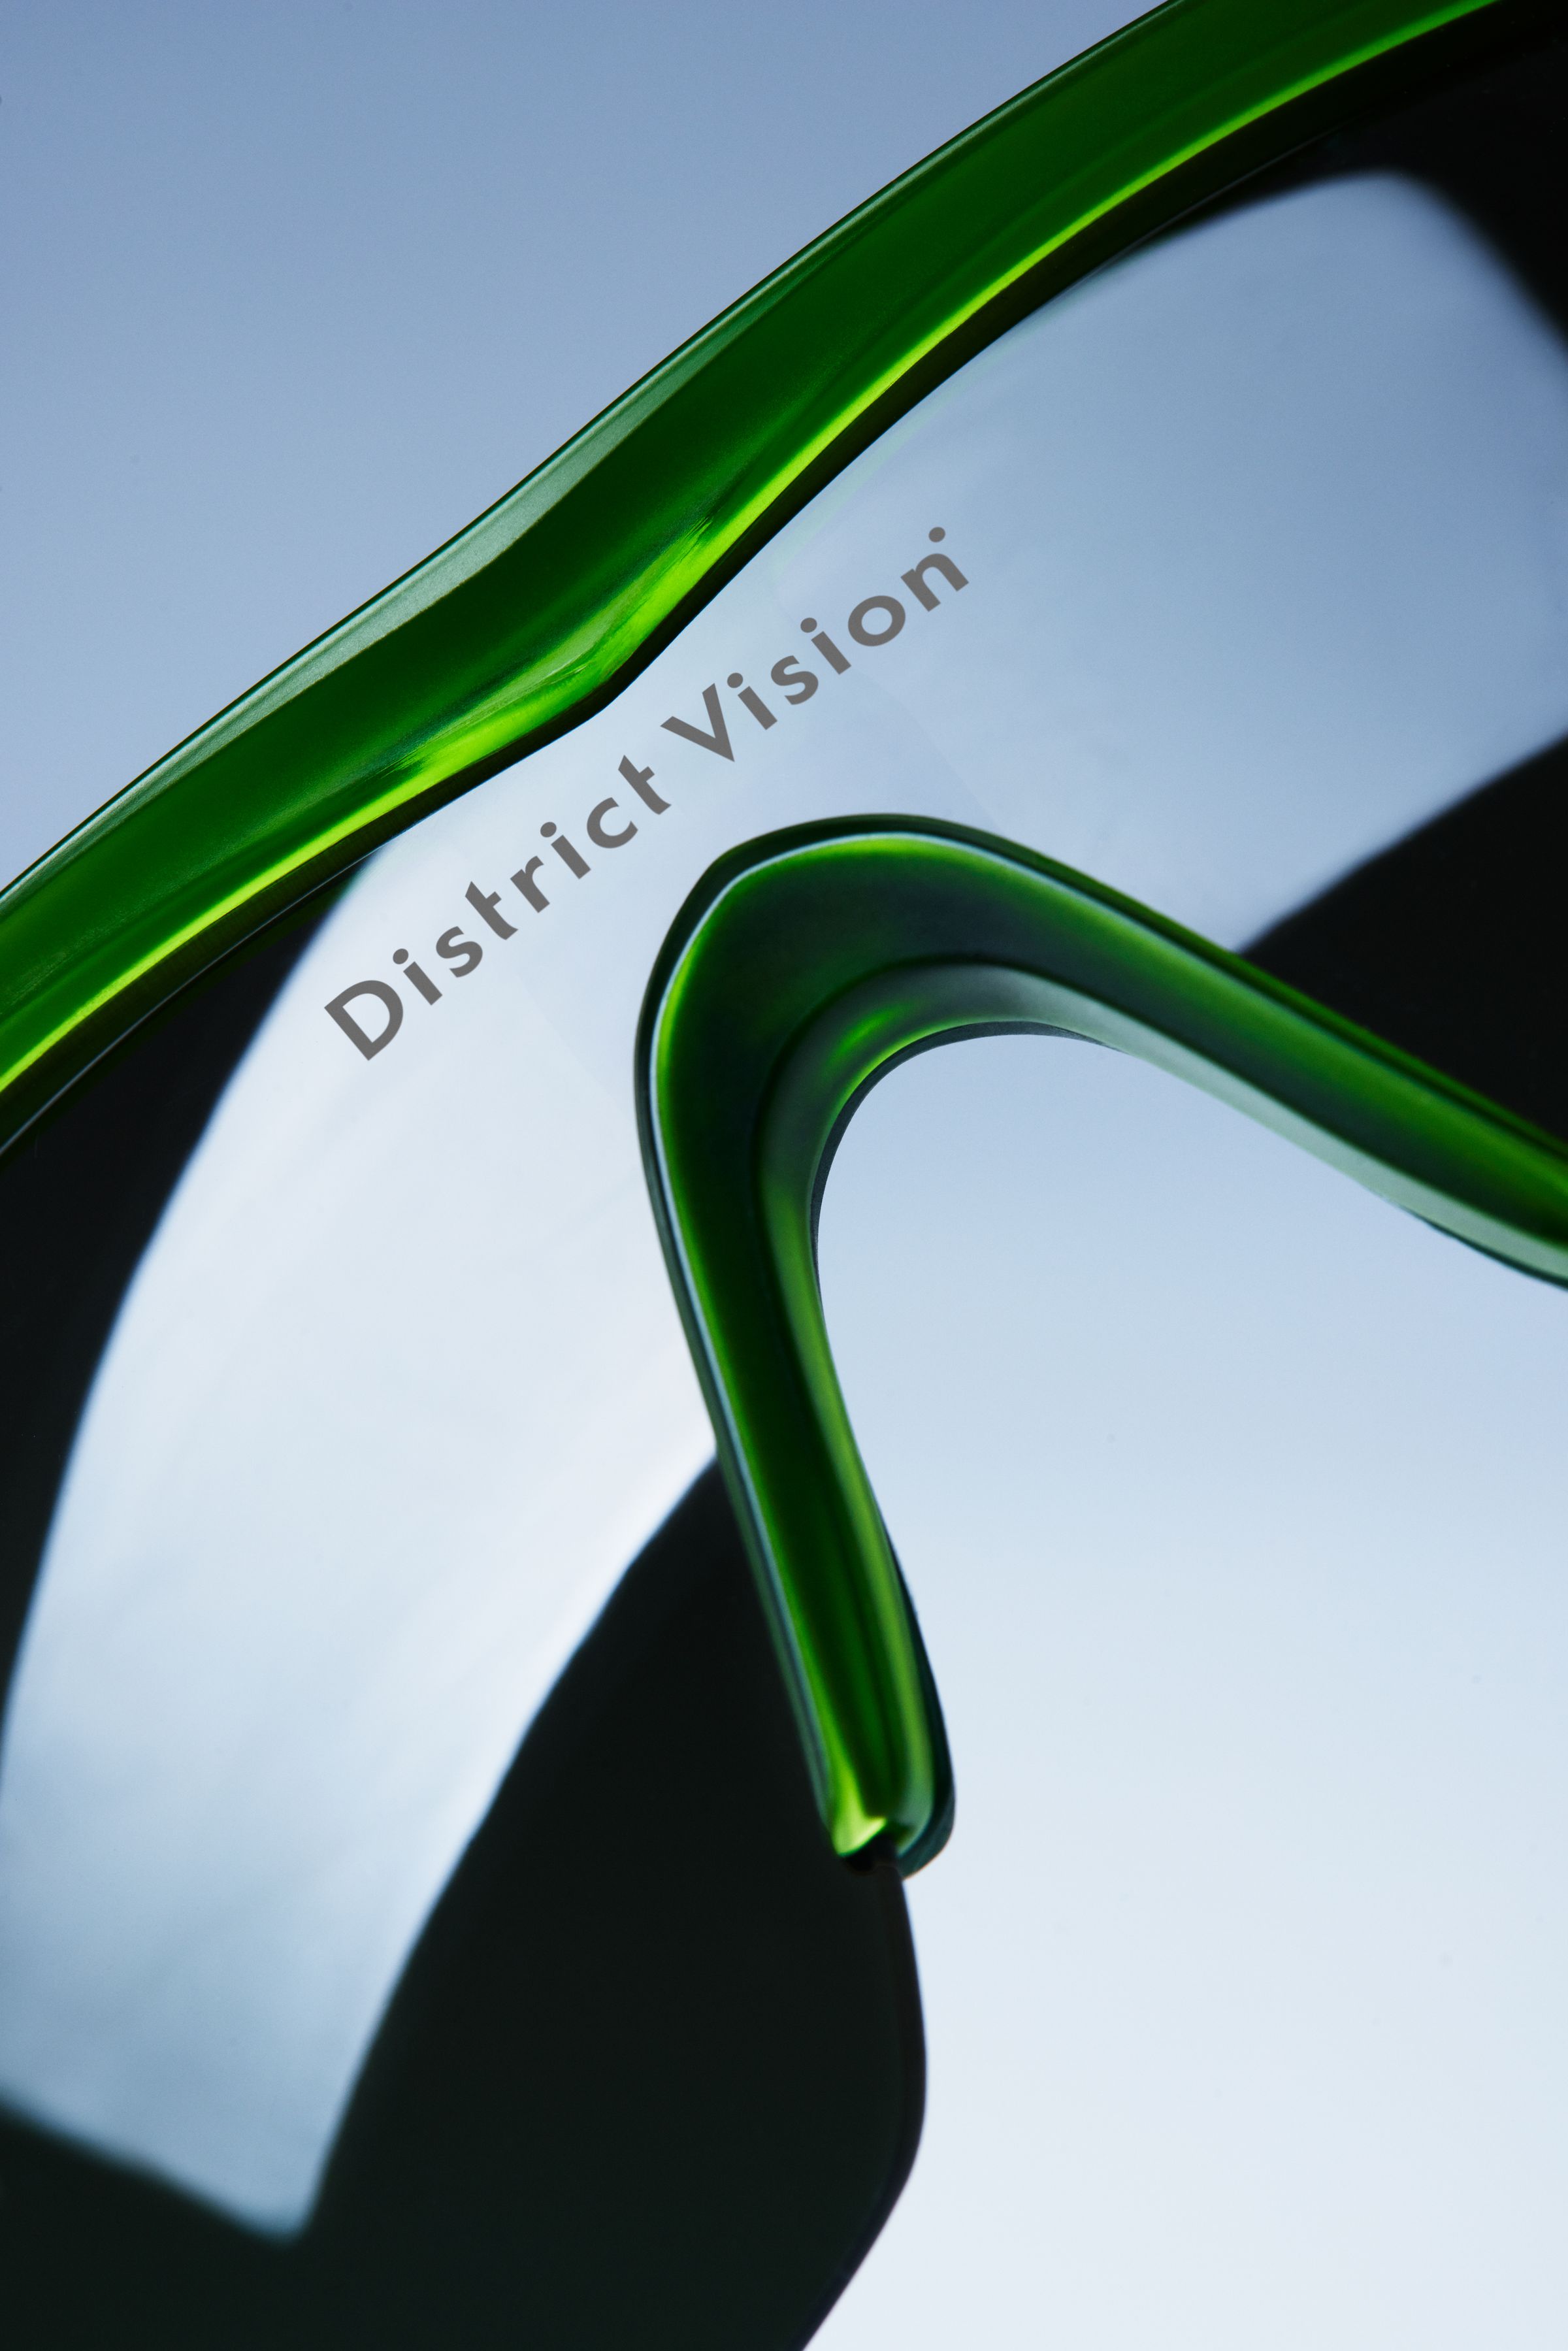 DISTRICT VISION Junya Racer D-Frame Polycarbonate Sunglasses for Men